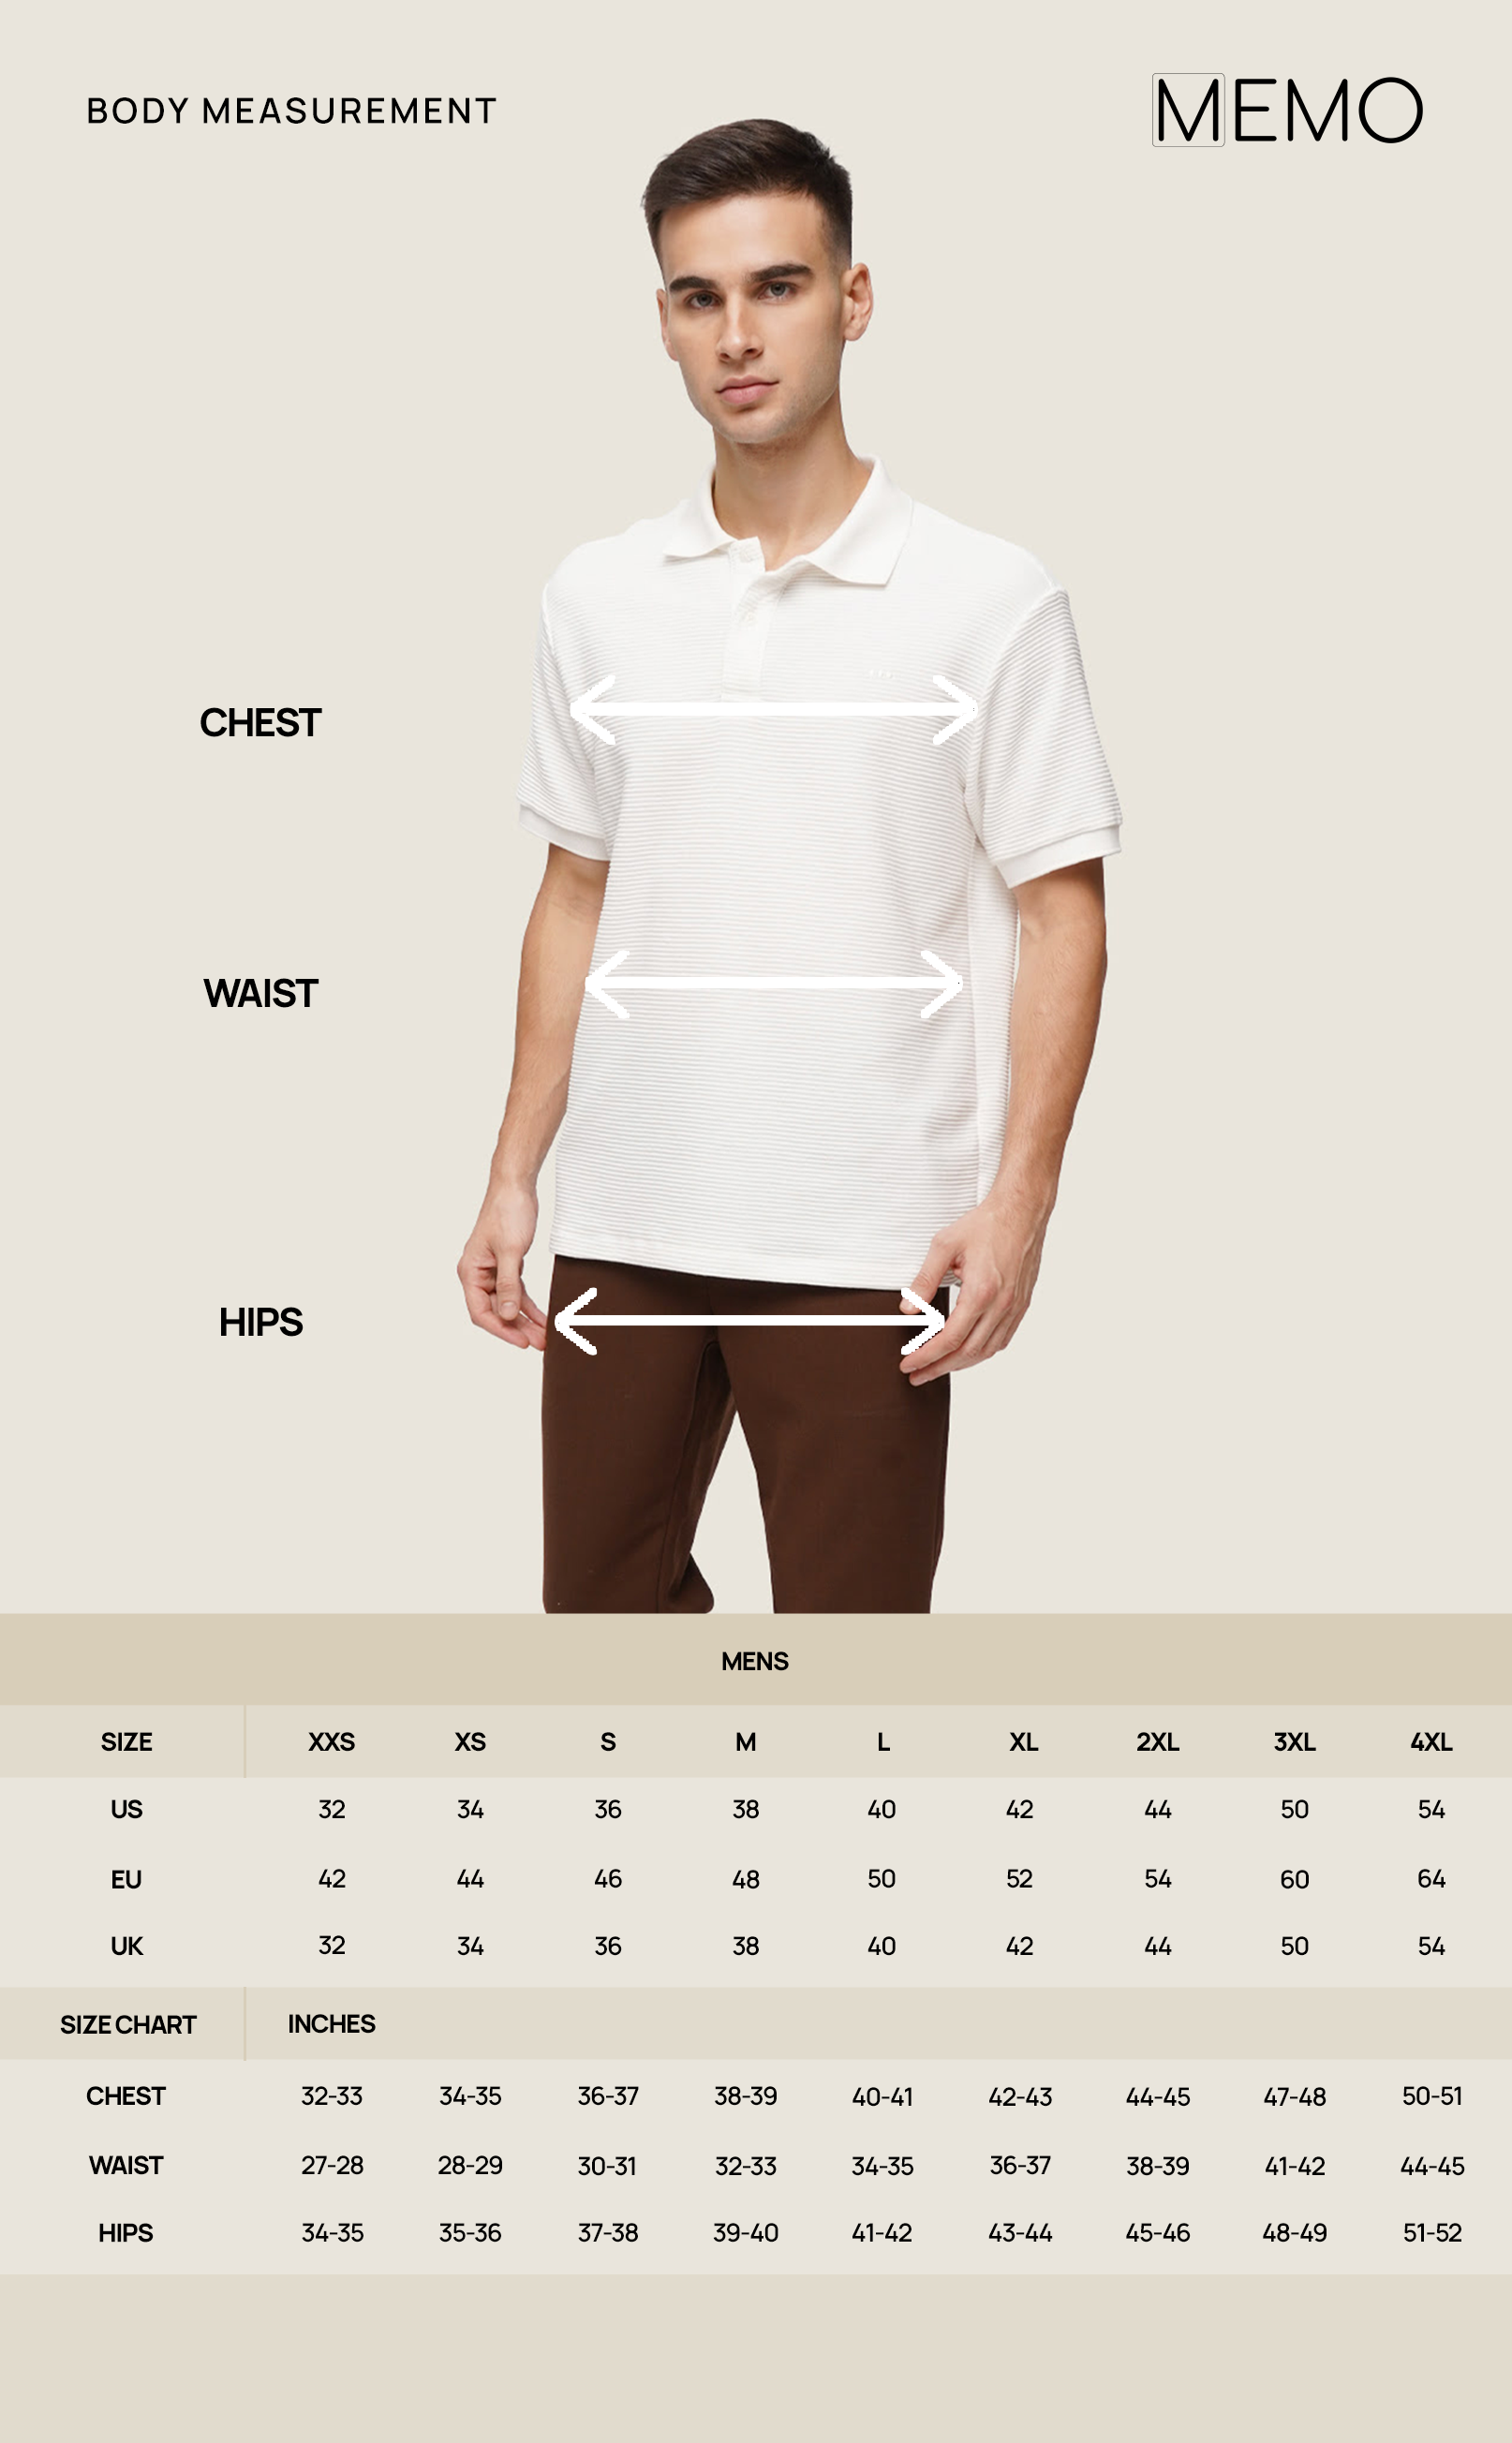 Memo Ultimate Basics Easy Fit Long Sleeve Shirt For Men (White